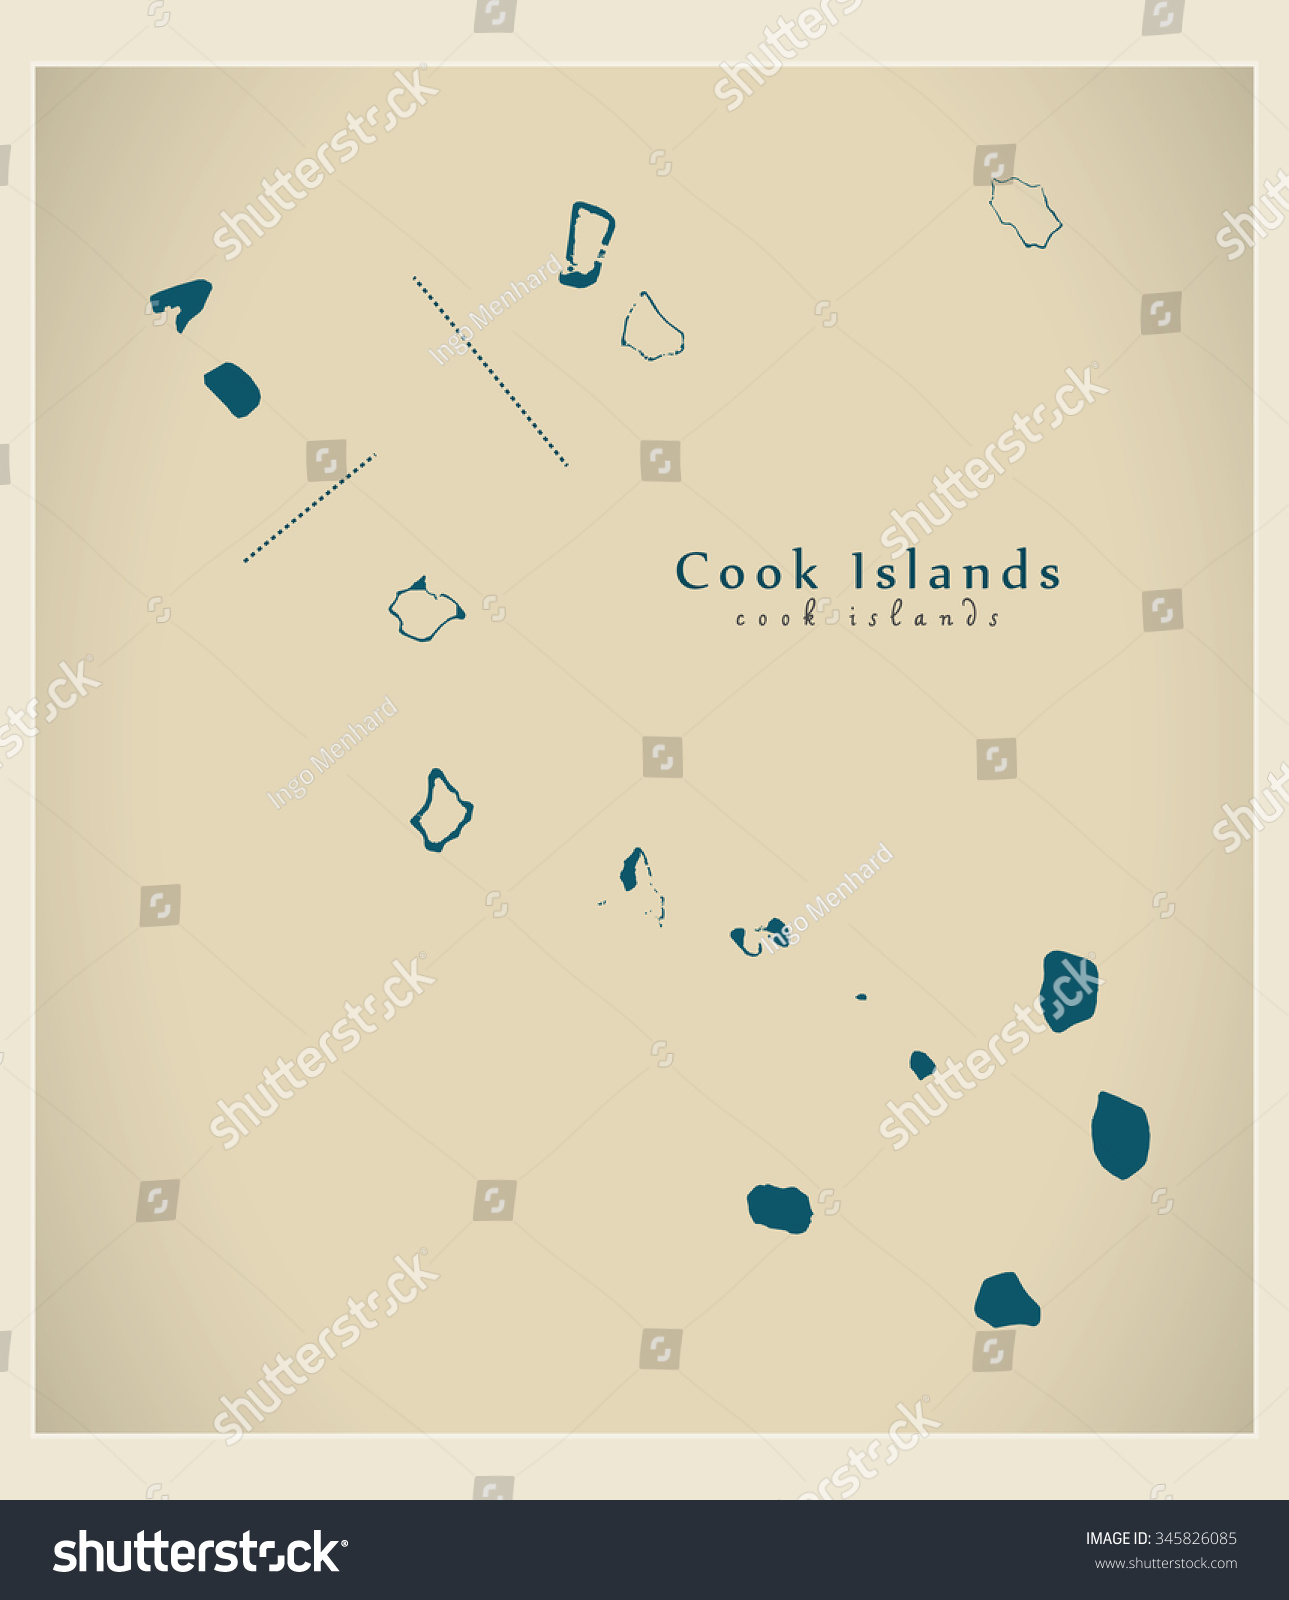 现代地图-库克群岛CK-符号\/标志,抽象-海洛创意